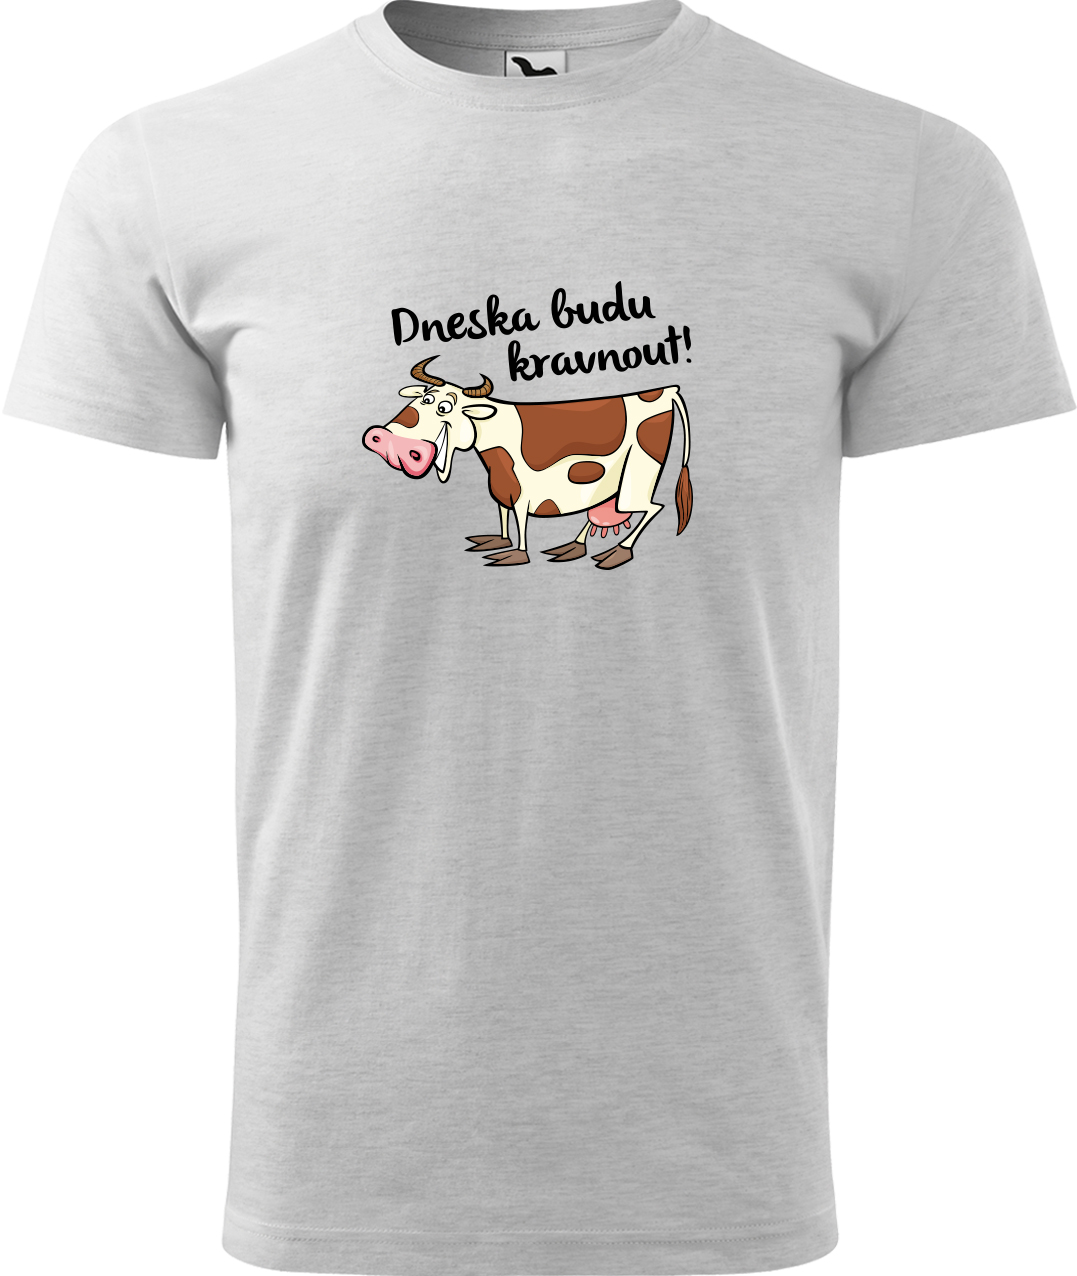 Pánské tričko s krávou - Dneska budu kravnout! Velikost: XL, Barva: Světle šedý melír (03), Střih: pánský